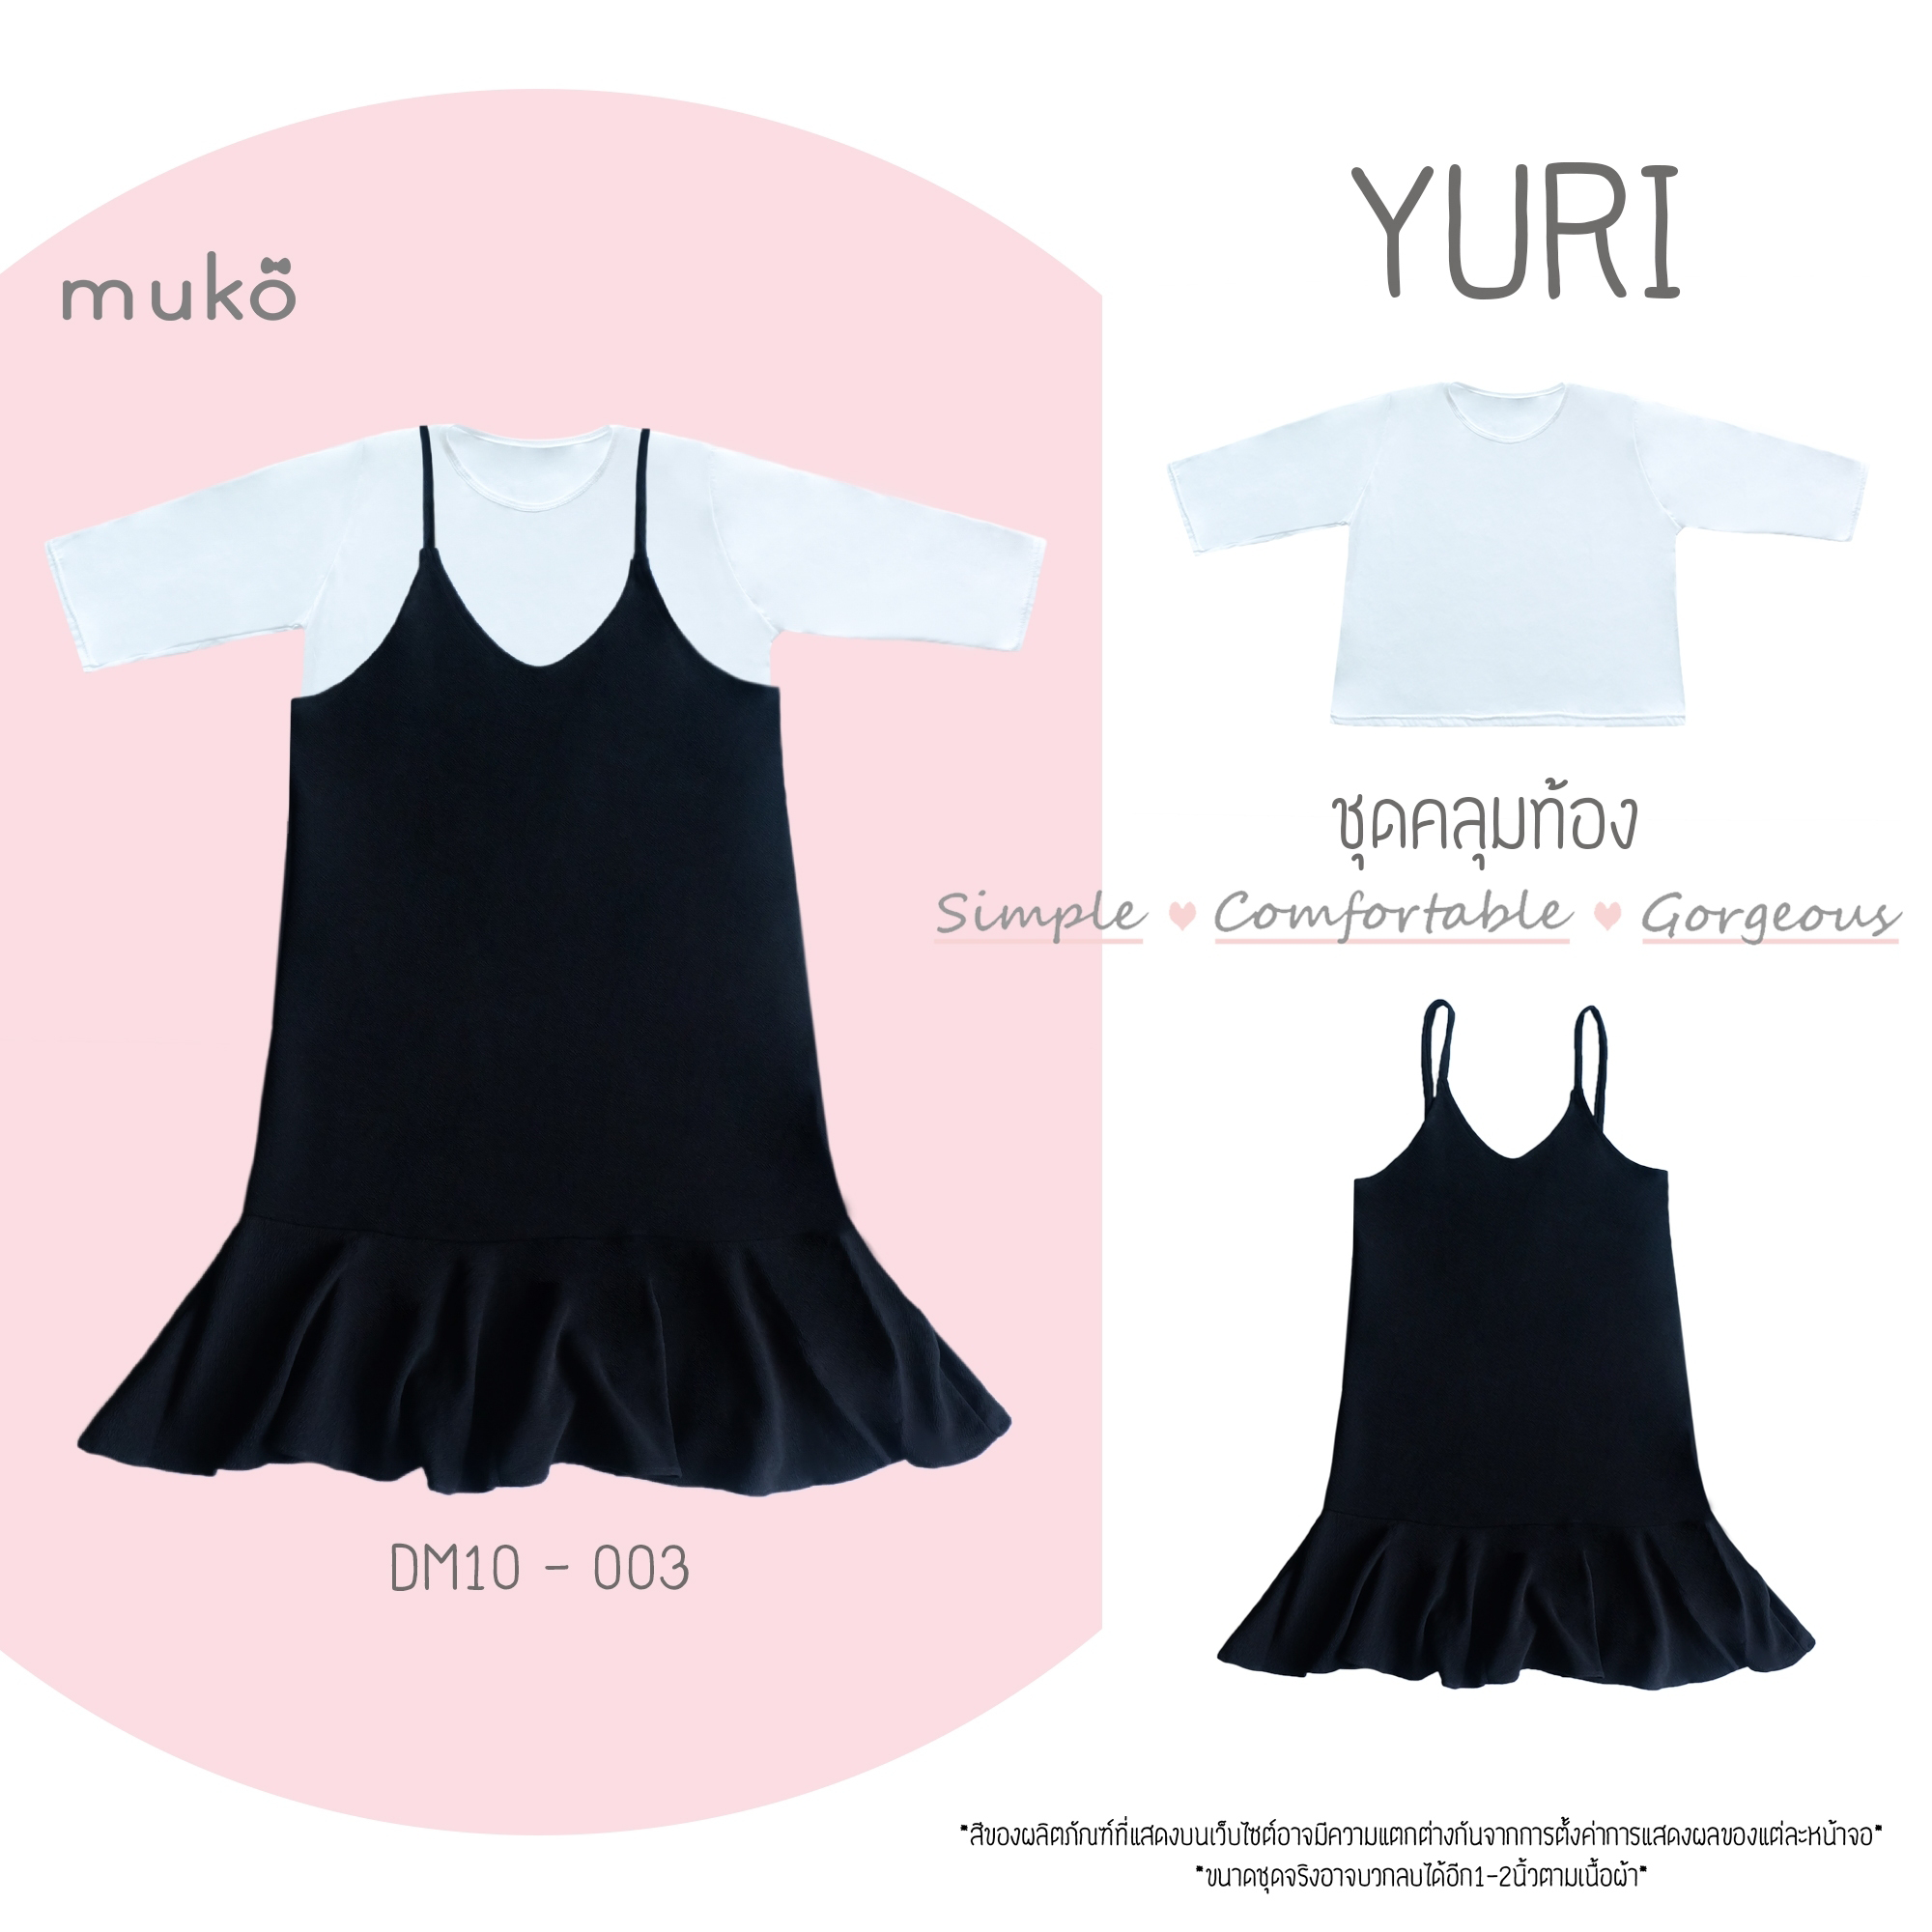 Muko Yuri ชุดเซ็ต (เสื้อและกระโปรงเอี๊ยม) คลุมท้องหรือจะใส่แฟชั่นสวยๆก็ได้นะคะ DM10-003 สีดำ